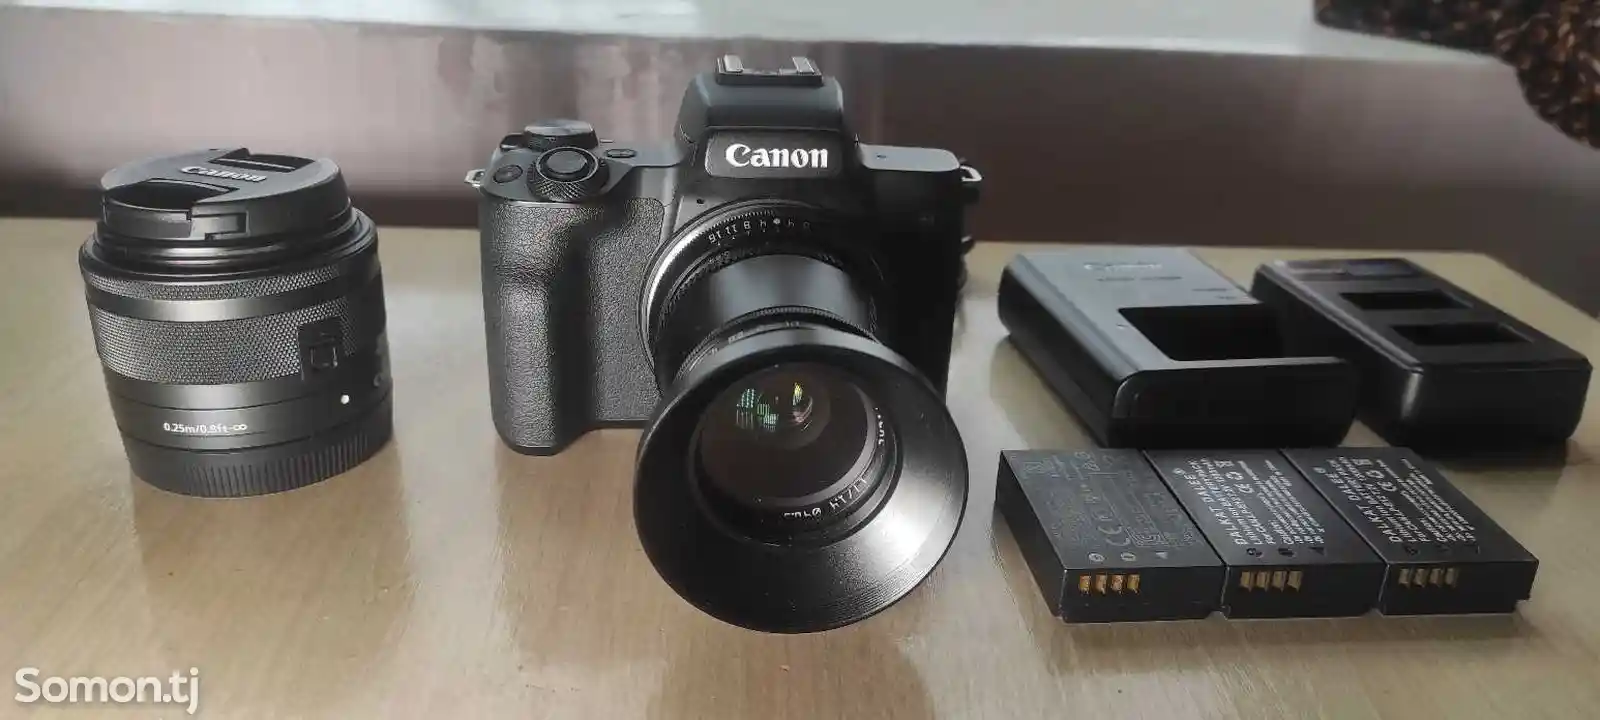 Фотоаппарат Canon M50 + Zhiyun crane plus-3